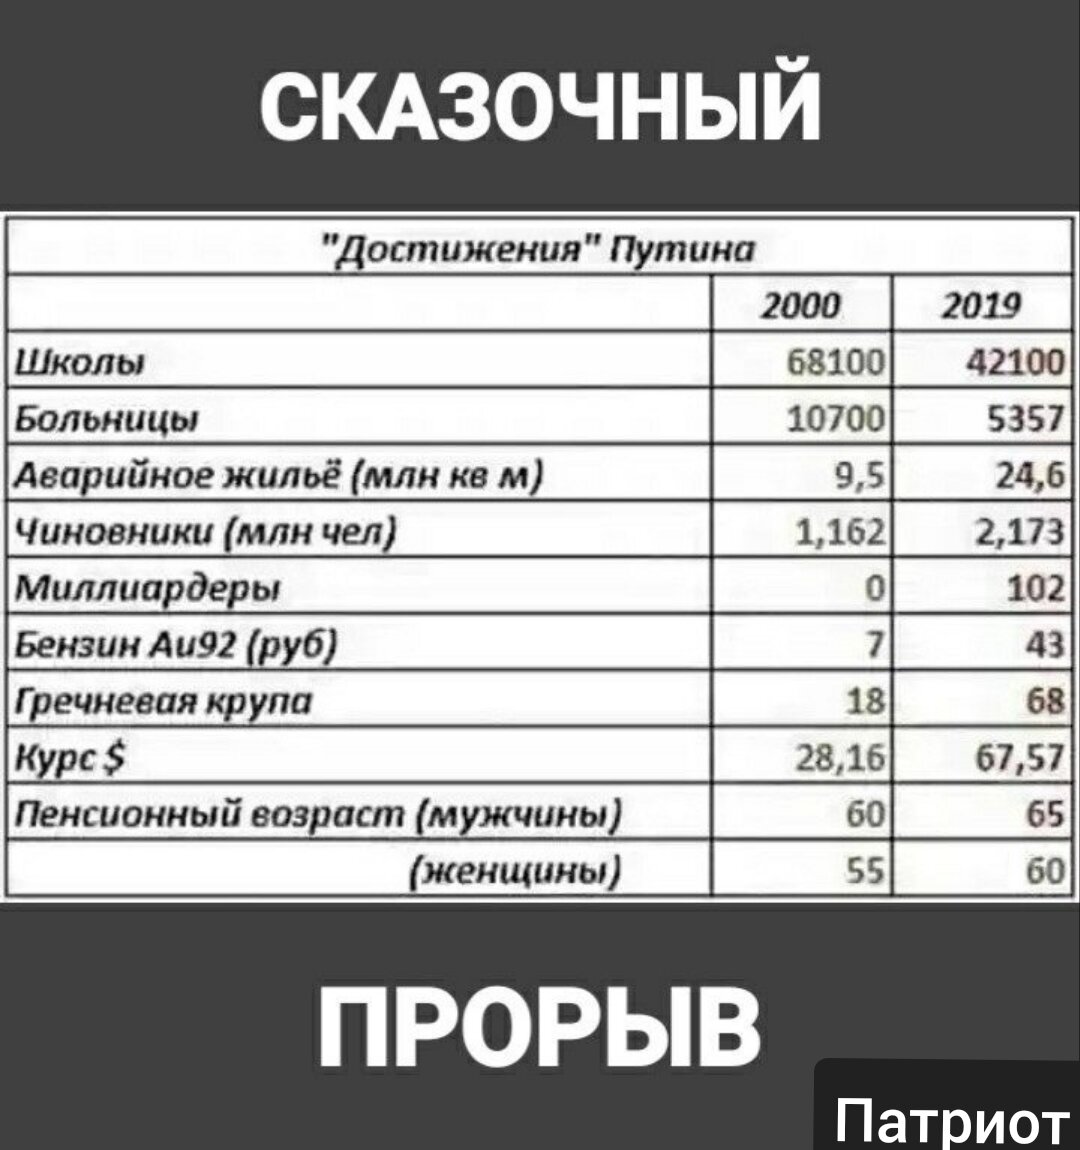 Насколько закроют. Сколько школ закрылось при Путине. Количество заводов закрытых при Путине. Количество закрытых больниц и школ при Путине. Закрытие школ и больниц при Путине.